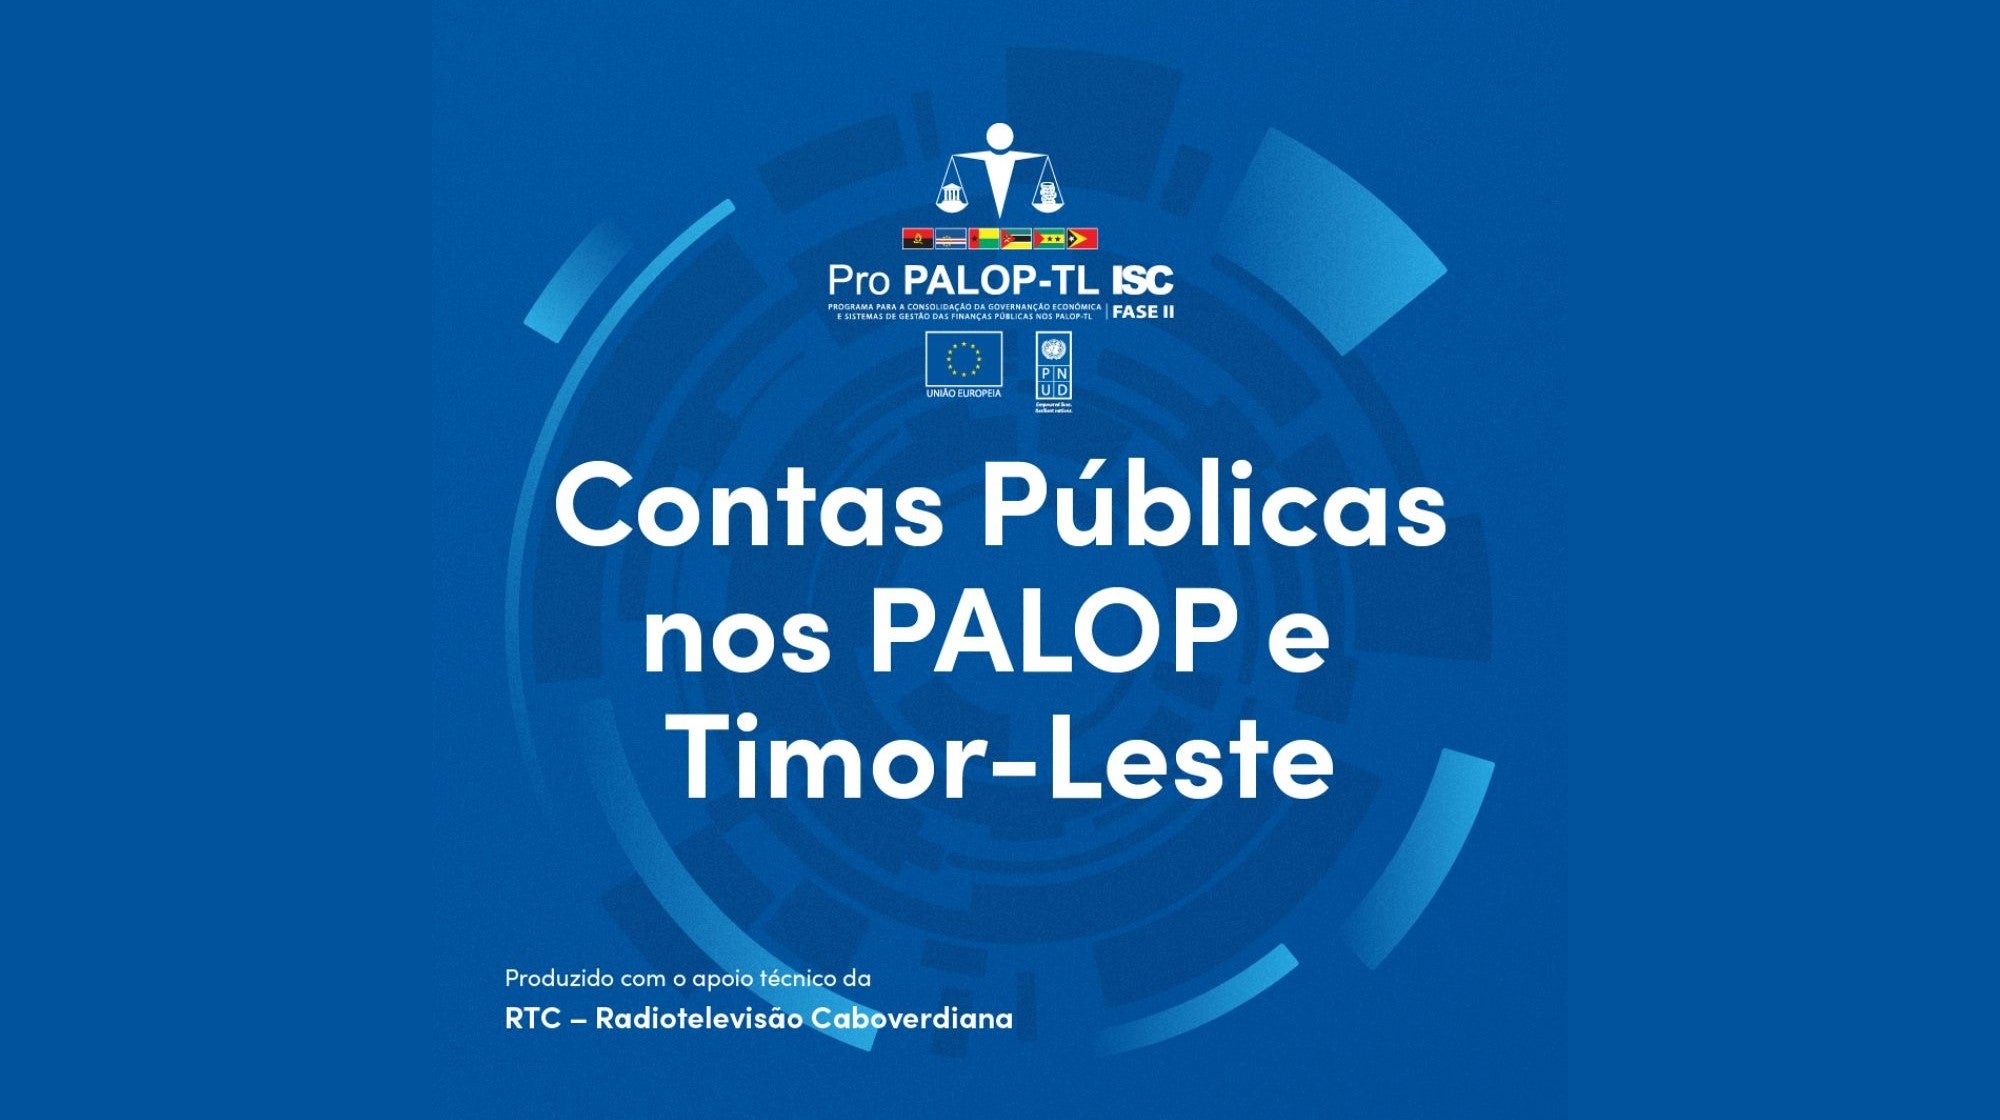 Pro PALOP-TL ISC - Contas Pblicas nos PALOP